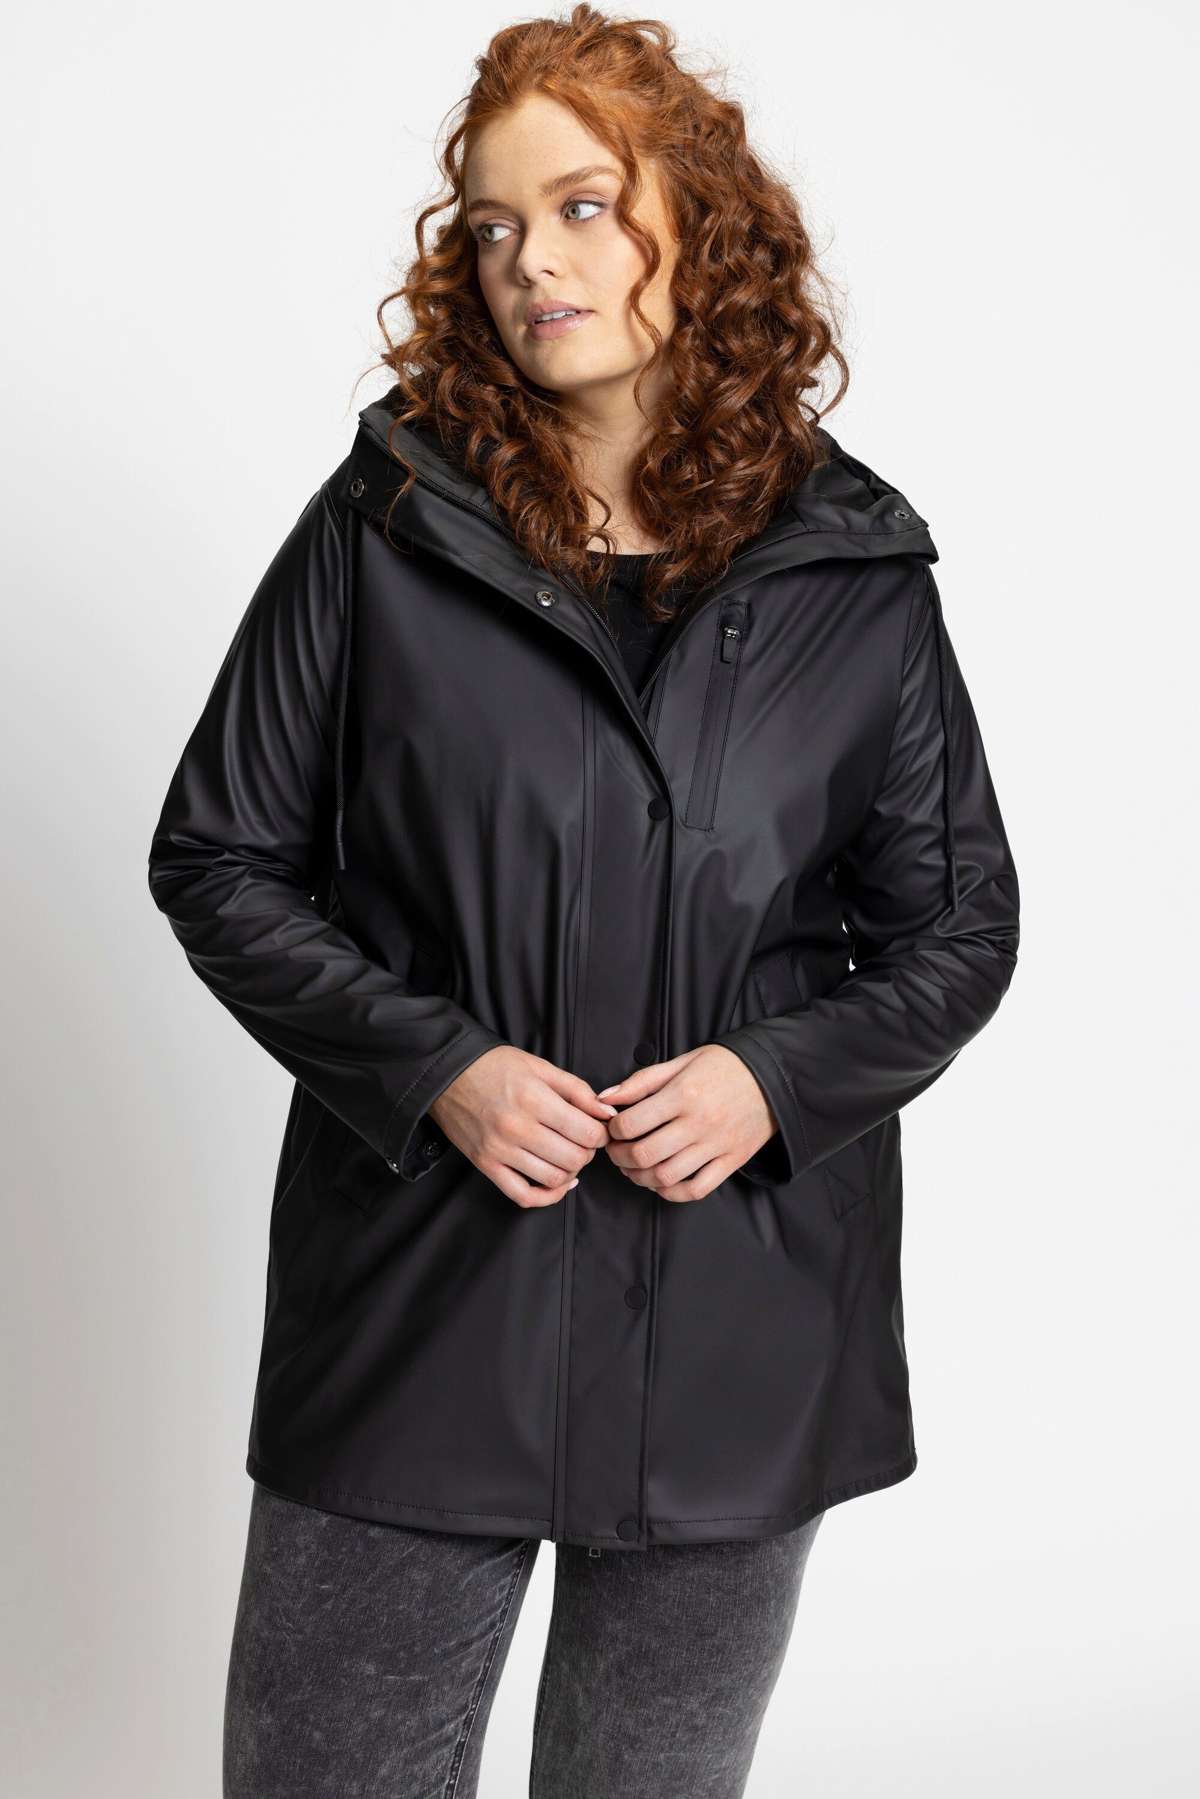 Функциональная куртка HYPRAR дождевик водонепроницаемая черная подкладка с капюшоном